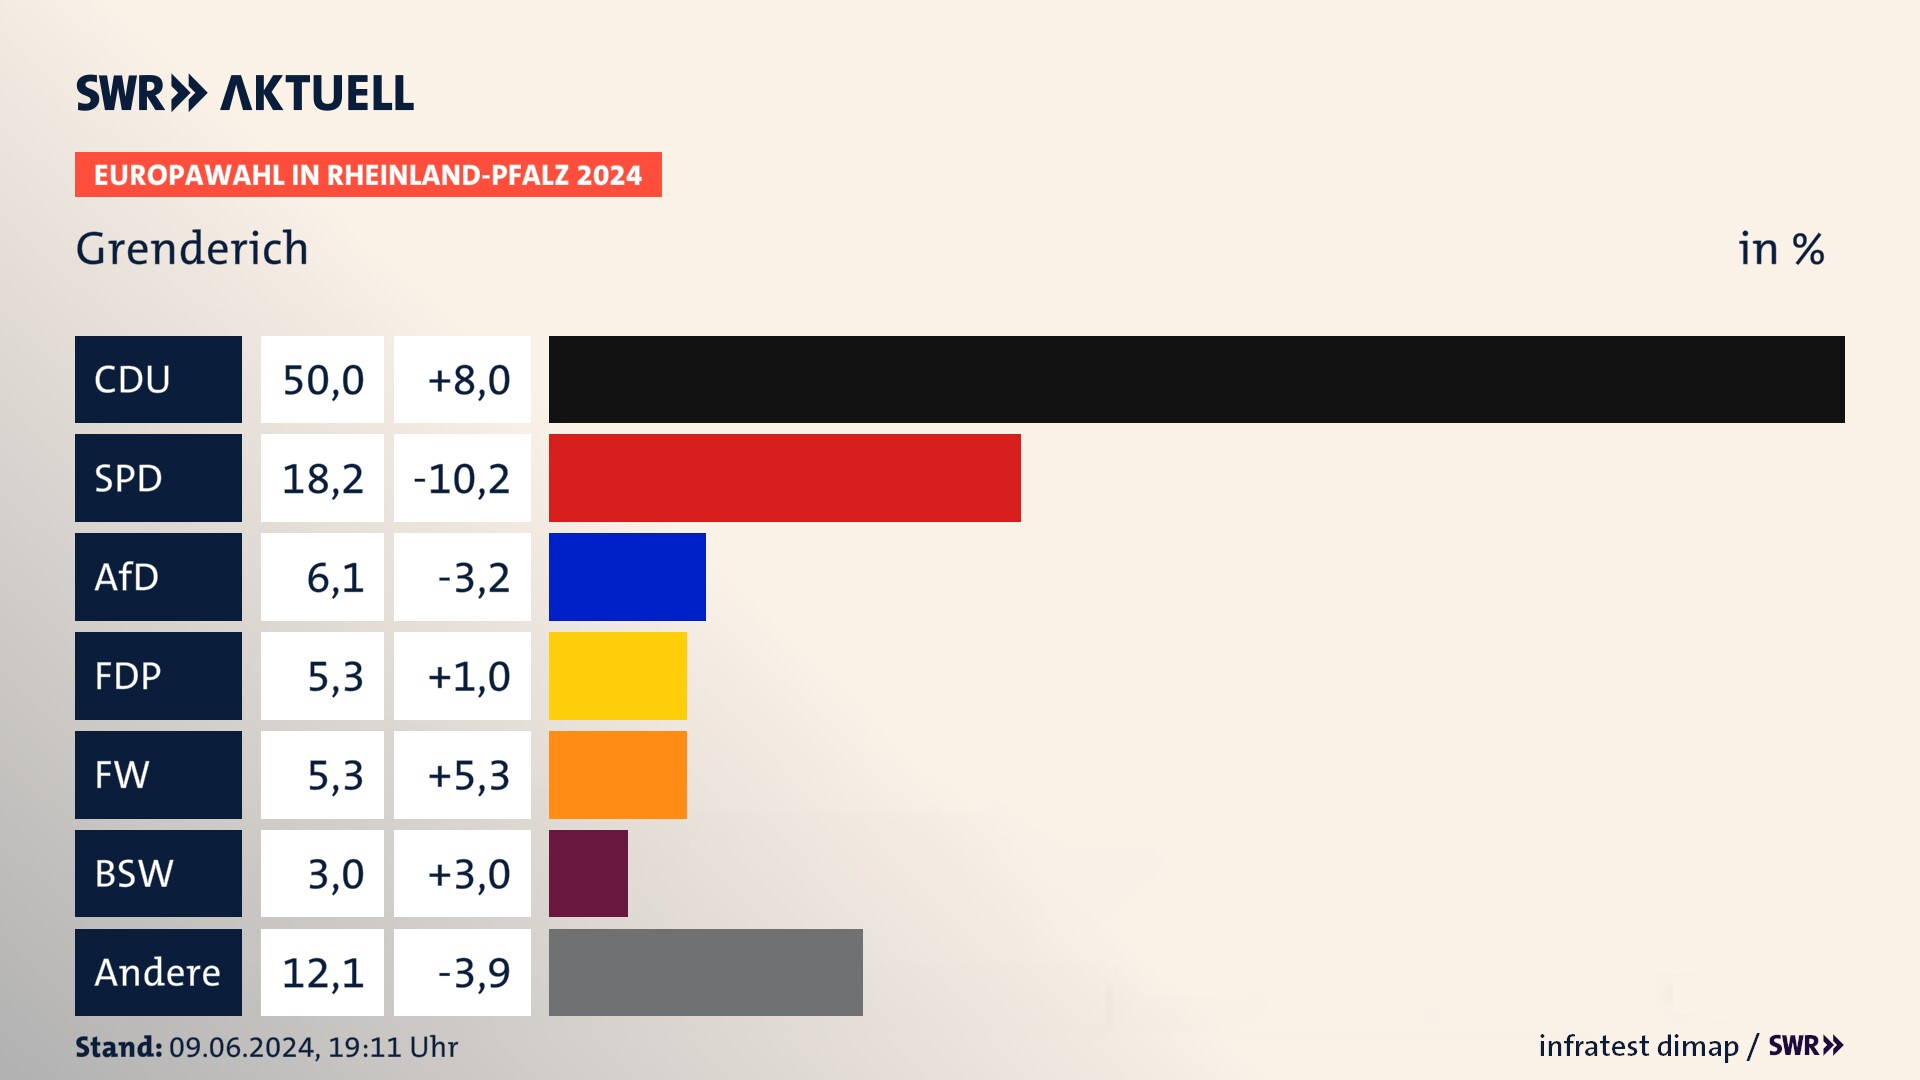 Europawahl 2024 Endergebnis Zweitstimme für Grenderich. In Grenderich erzielt die CDU 50,0 Prozent der gültigen Stimmen. Die SPD landet bei 18,2 Prozent. Die AfD erreicht 6,1 Prozent. Die FDP kommt auf 5,3 Prozent. Die Freien Wähler landen bei 5,3 Prozent. Die 2019 nicht angetretene Partei BSW bekommt 3,0 Prozent.